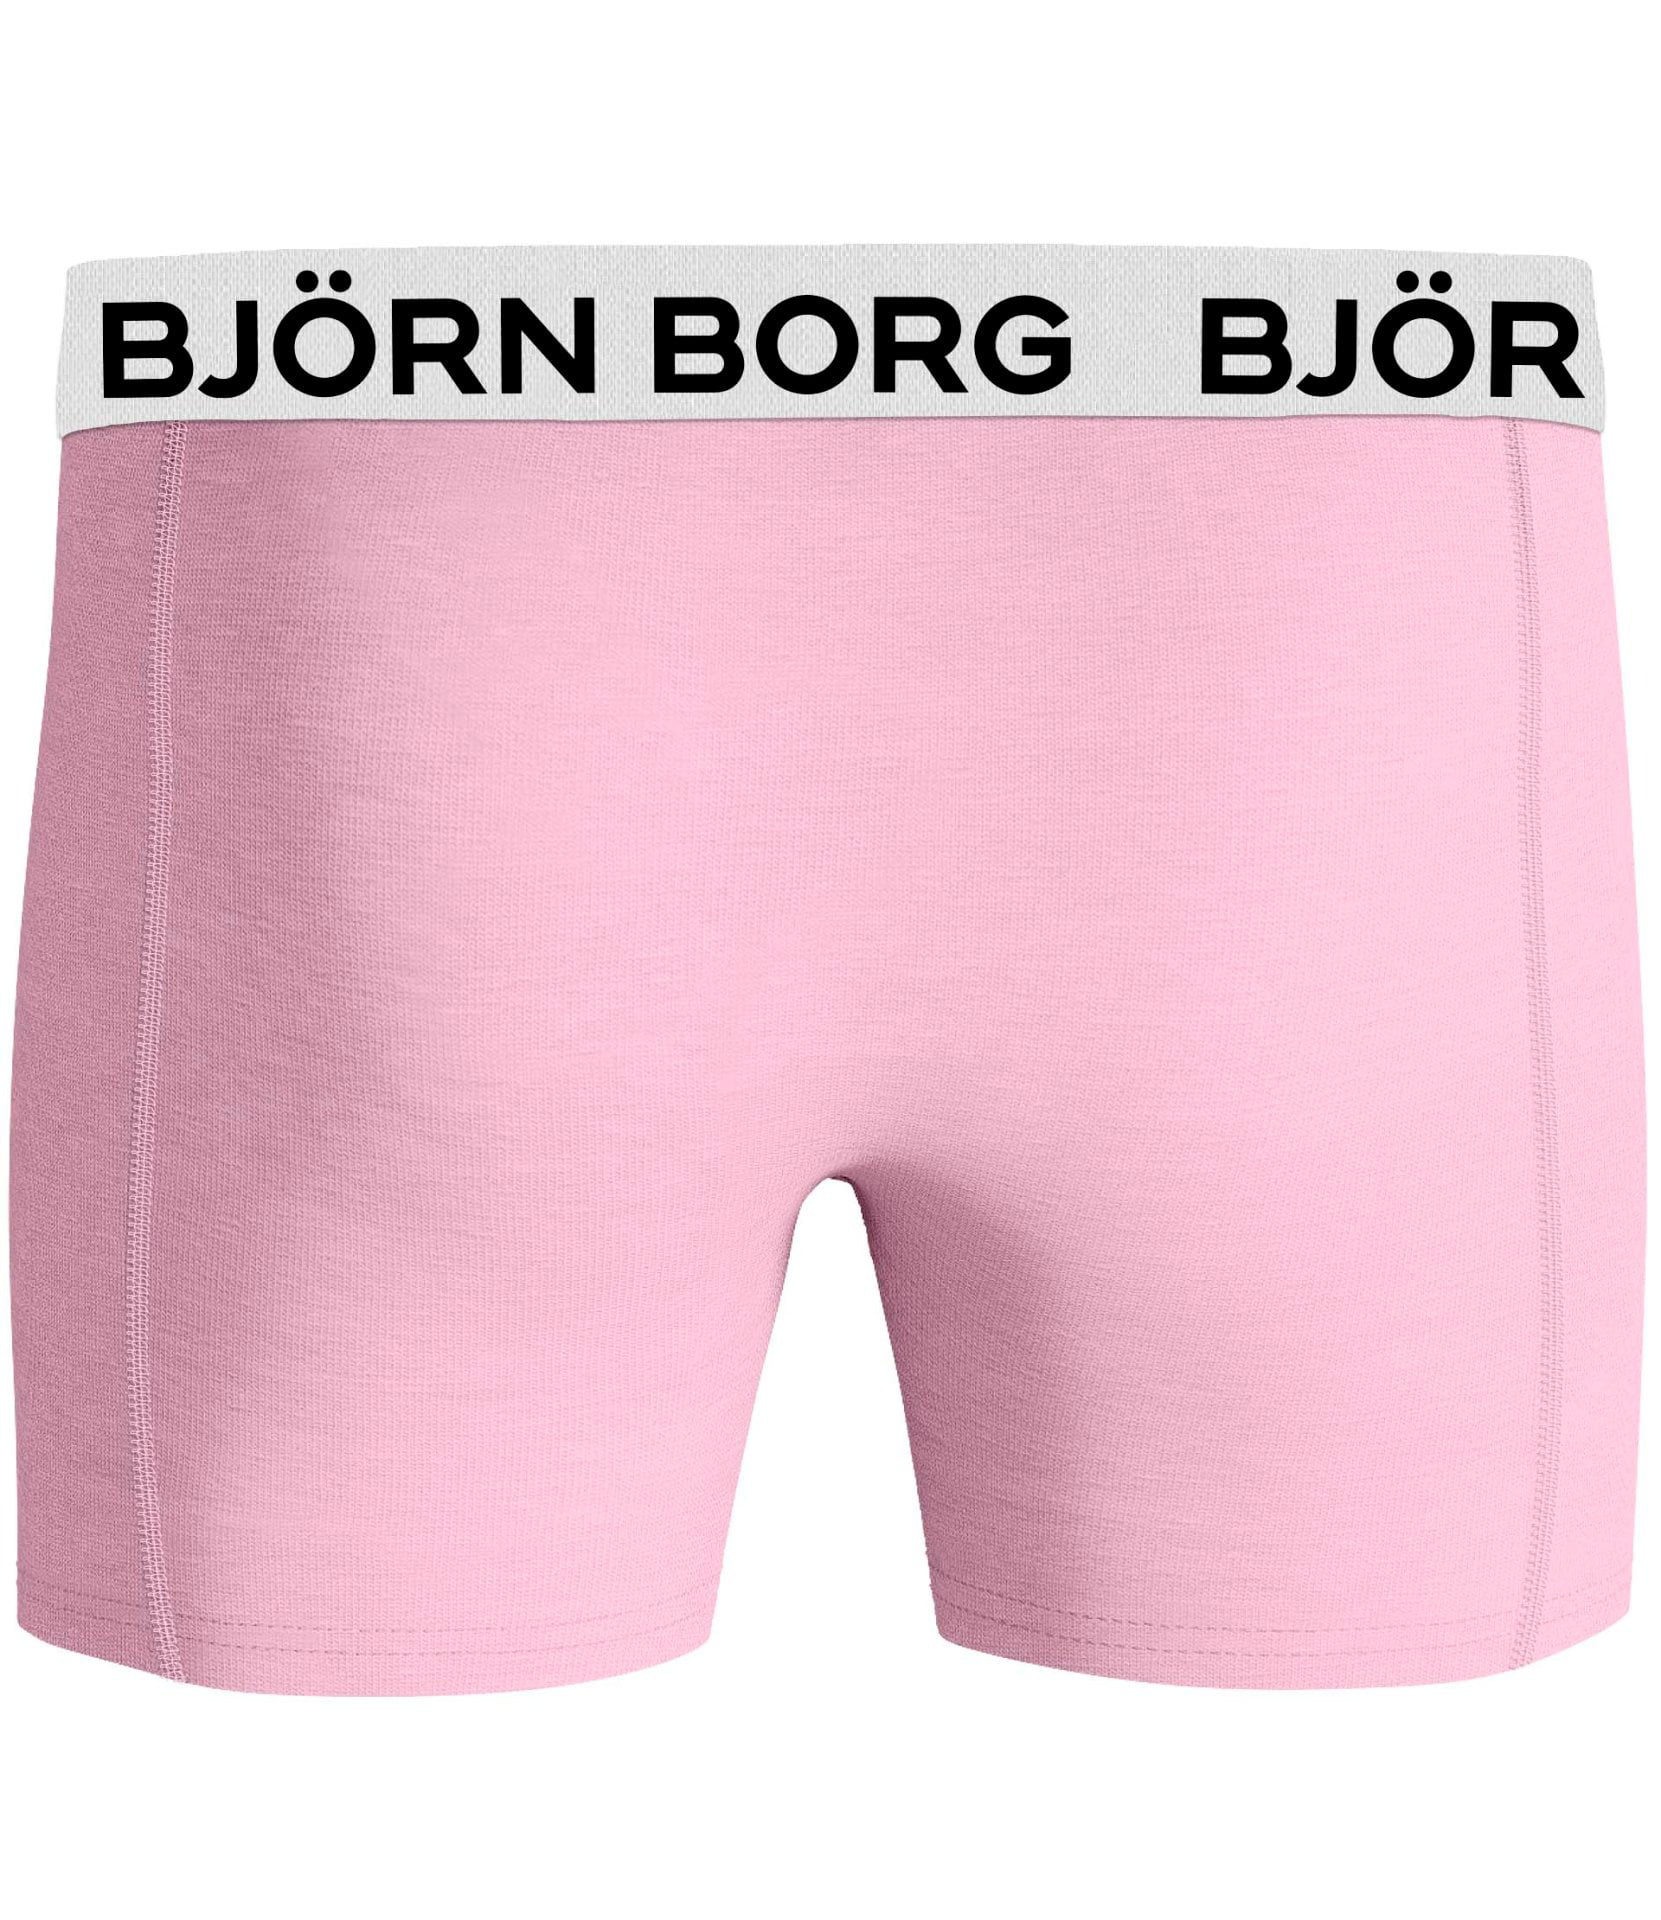 lineair veteraan In de naam Bjorn Borg Boy's 2 Pack Boxer Briefs ~ Core Boxer MP002 pink - Walmart.com